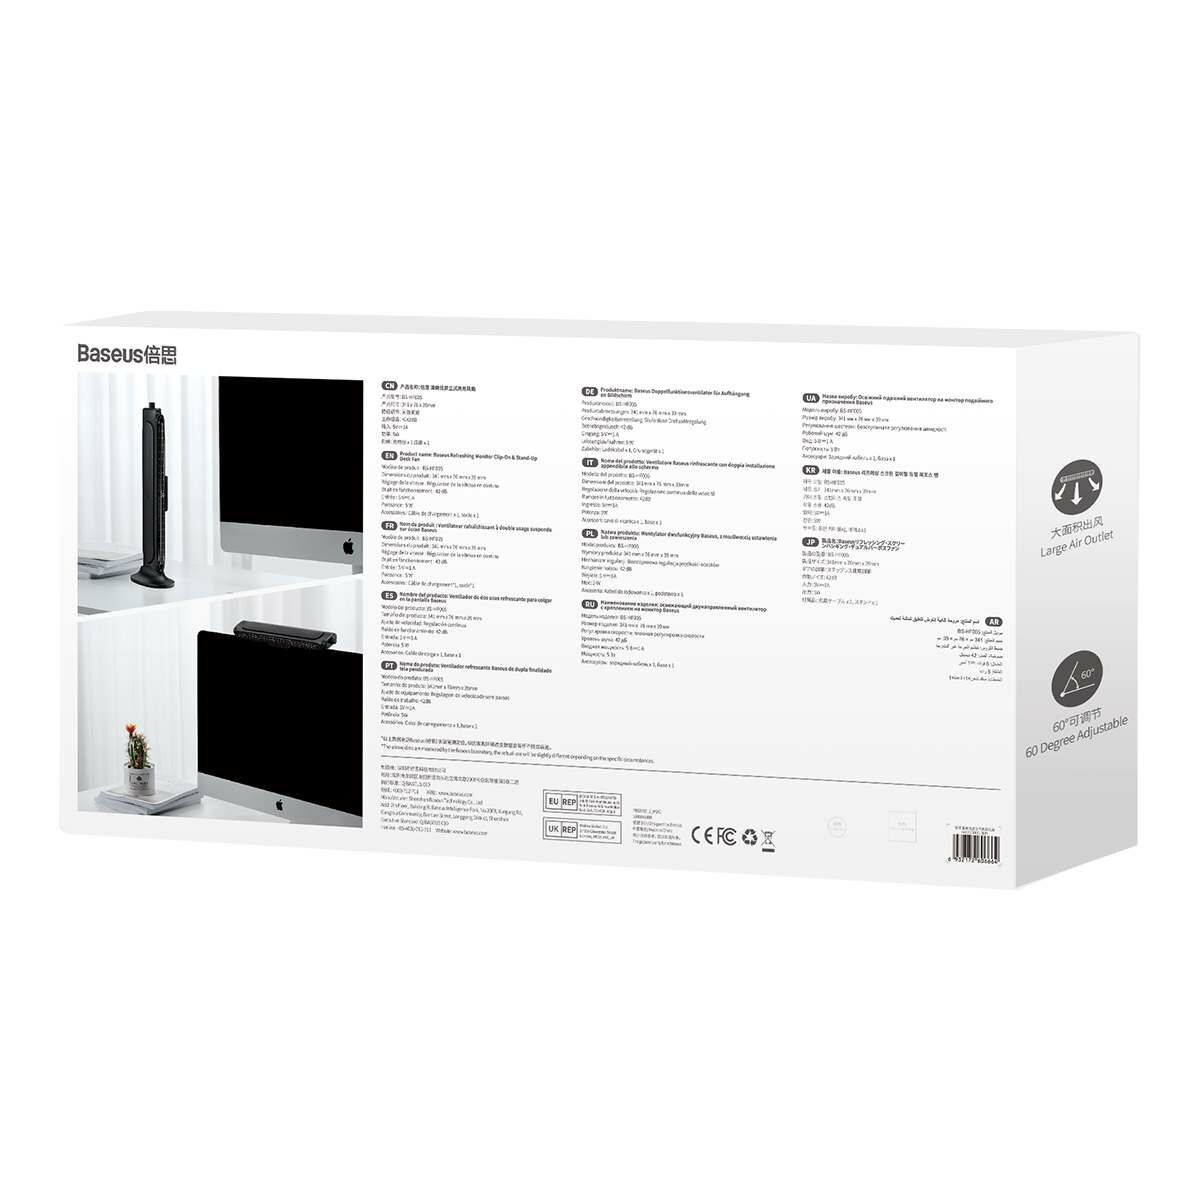 Kép 2/18 - Baseus ventilátor, Asztali vagy monitorra szereplhető, fekete (ACQS000001)